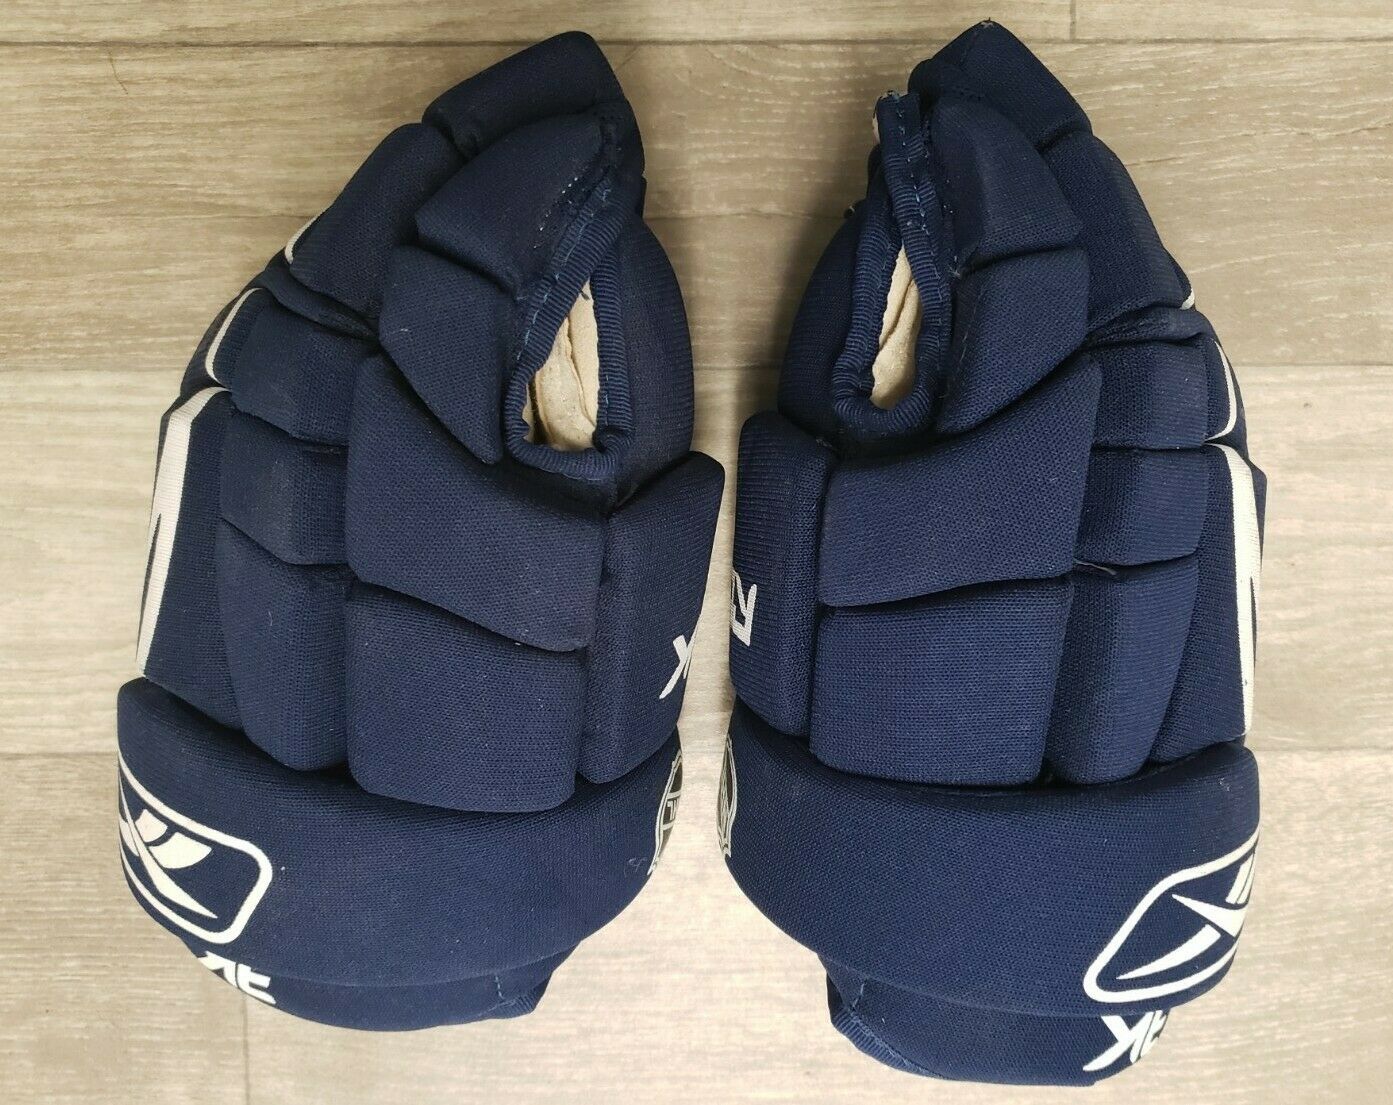 Reebok Rbk Gloves H63k 12" Hockey Gloves 3k Nhl Hockey Gloves Blue